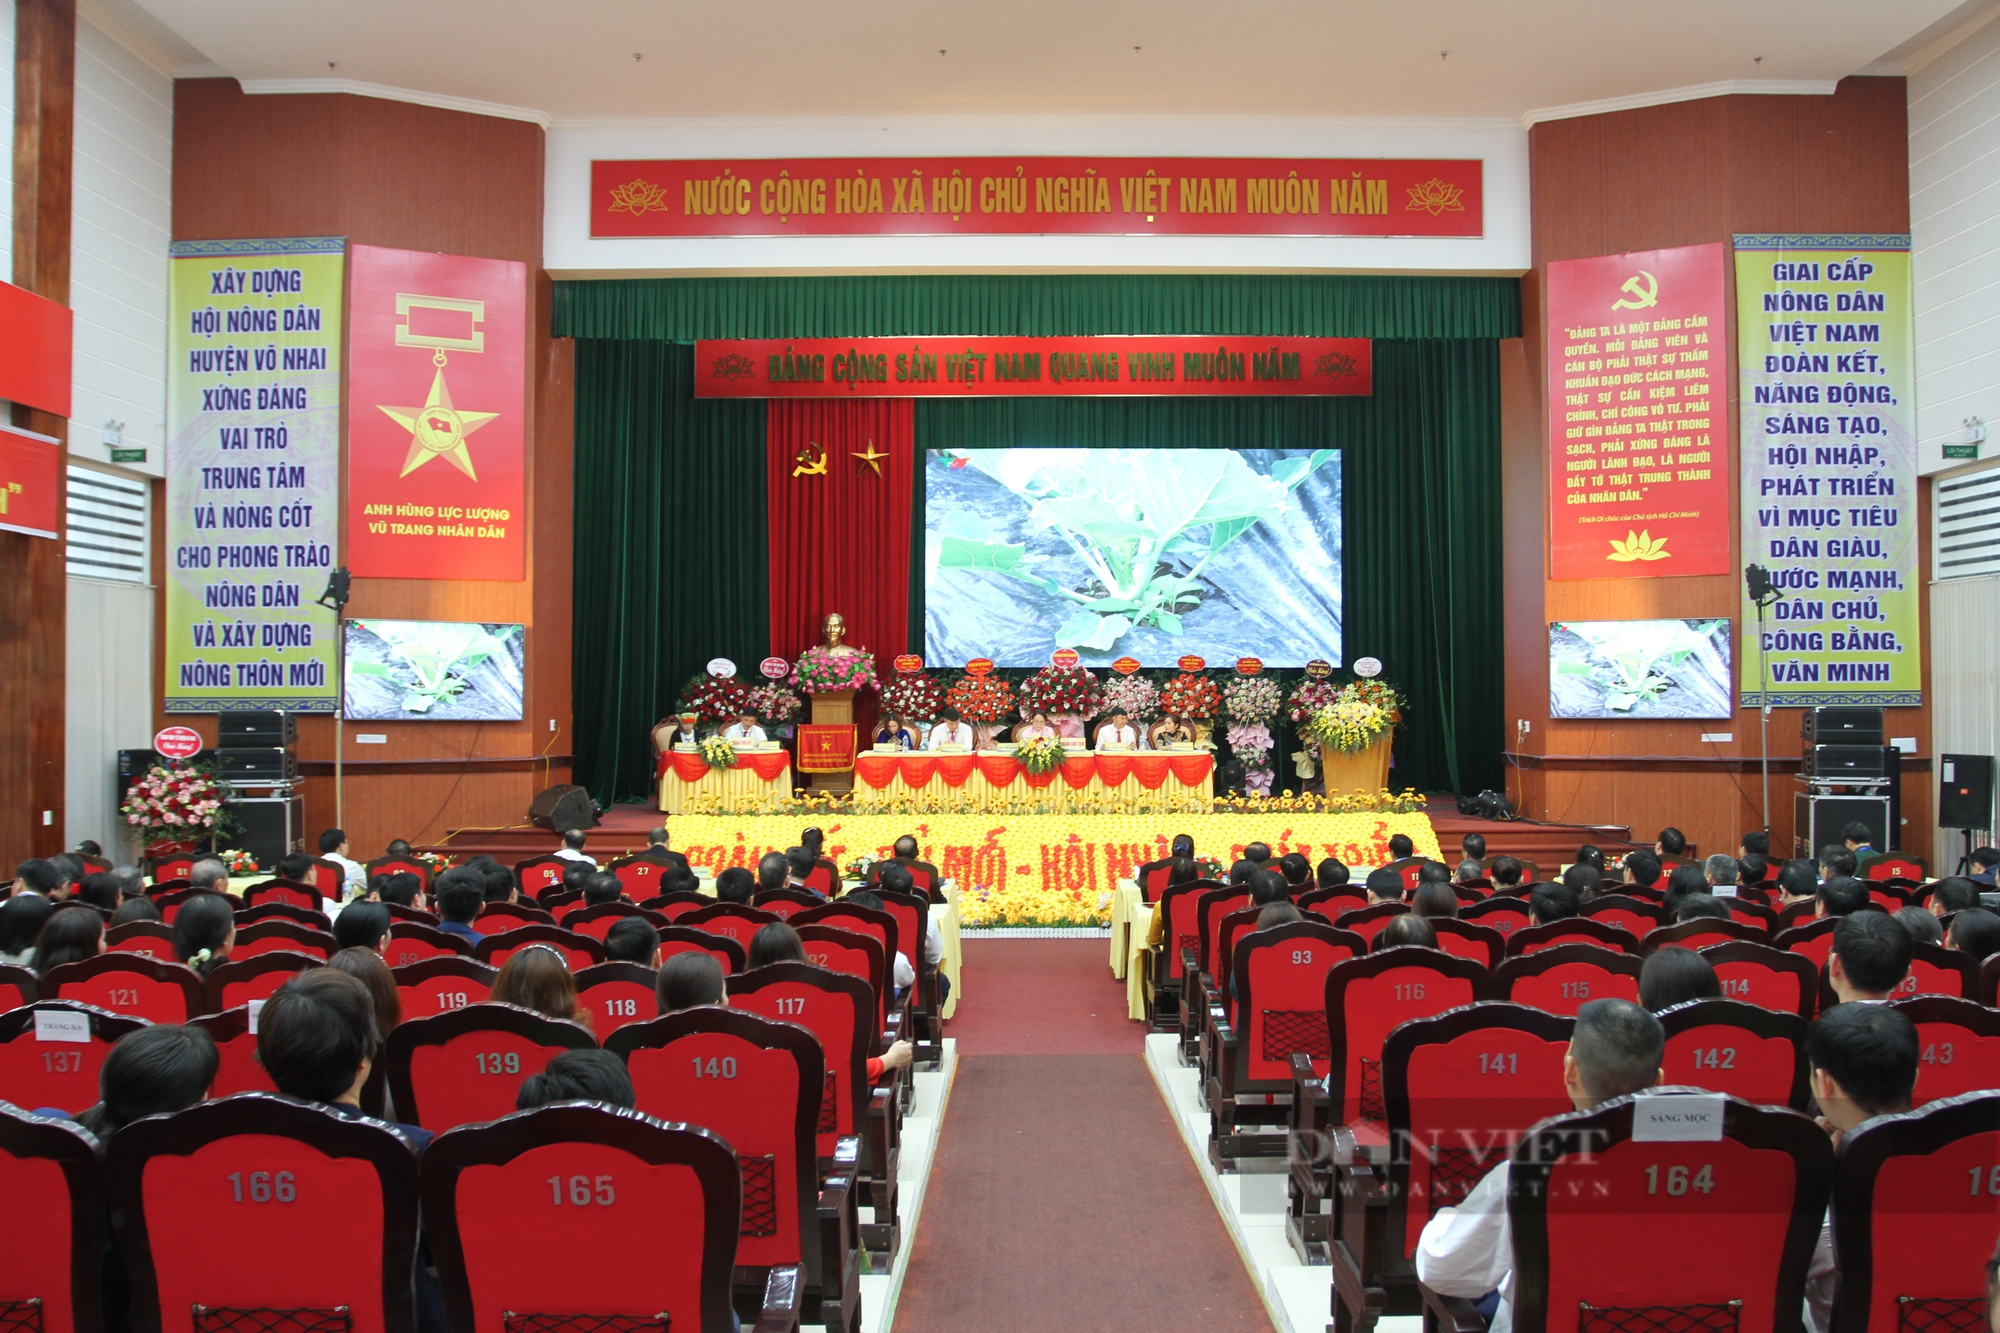 Khai mạc Đại hội đại biểu HND huyện Võ Nhai lần thứ X, bà Triệu Thị Nhinh tái đắc cử chức danh Chủ tịch - Ảnh 1.